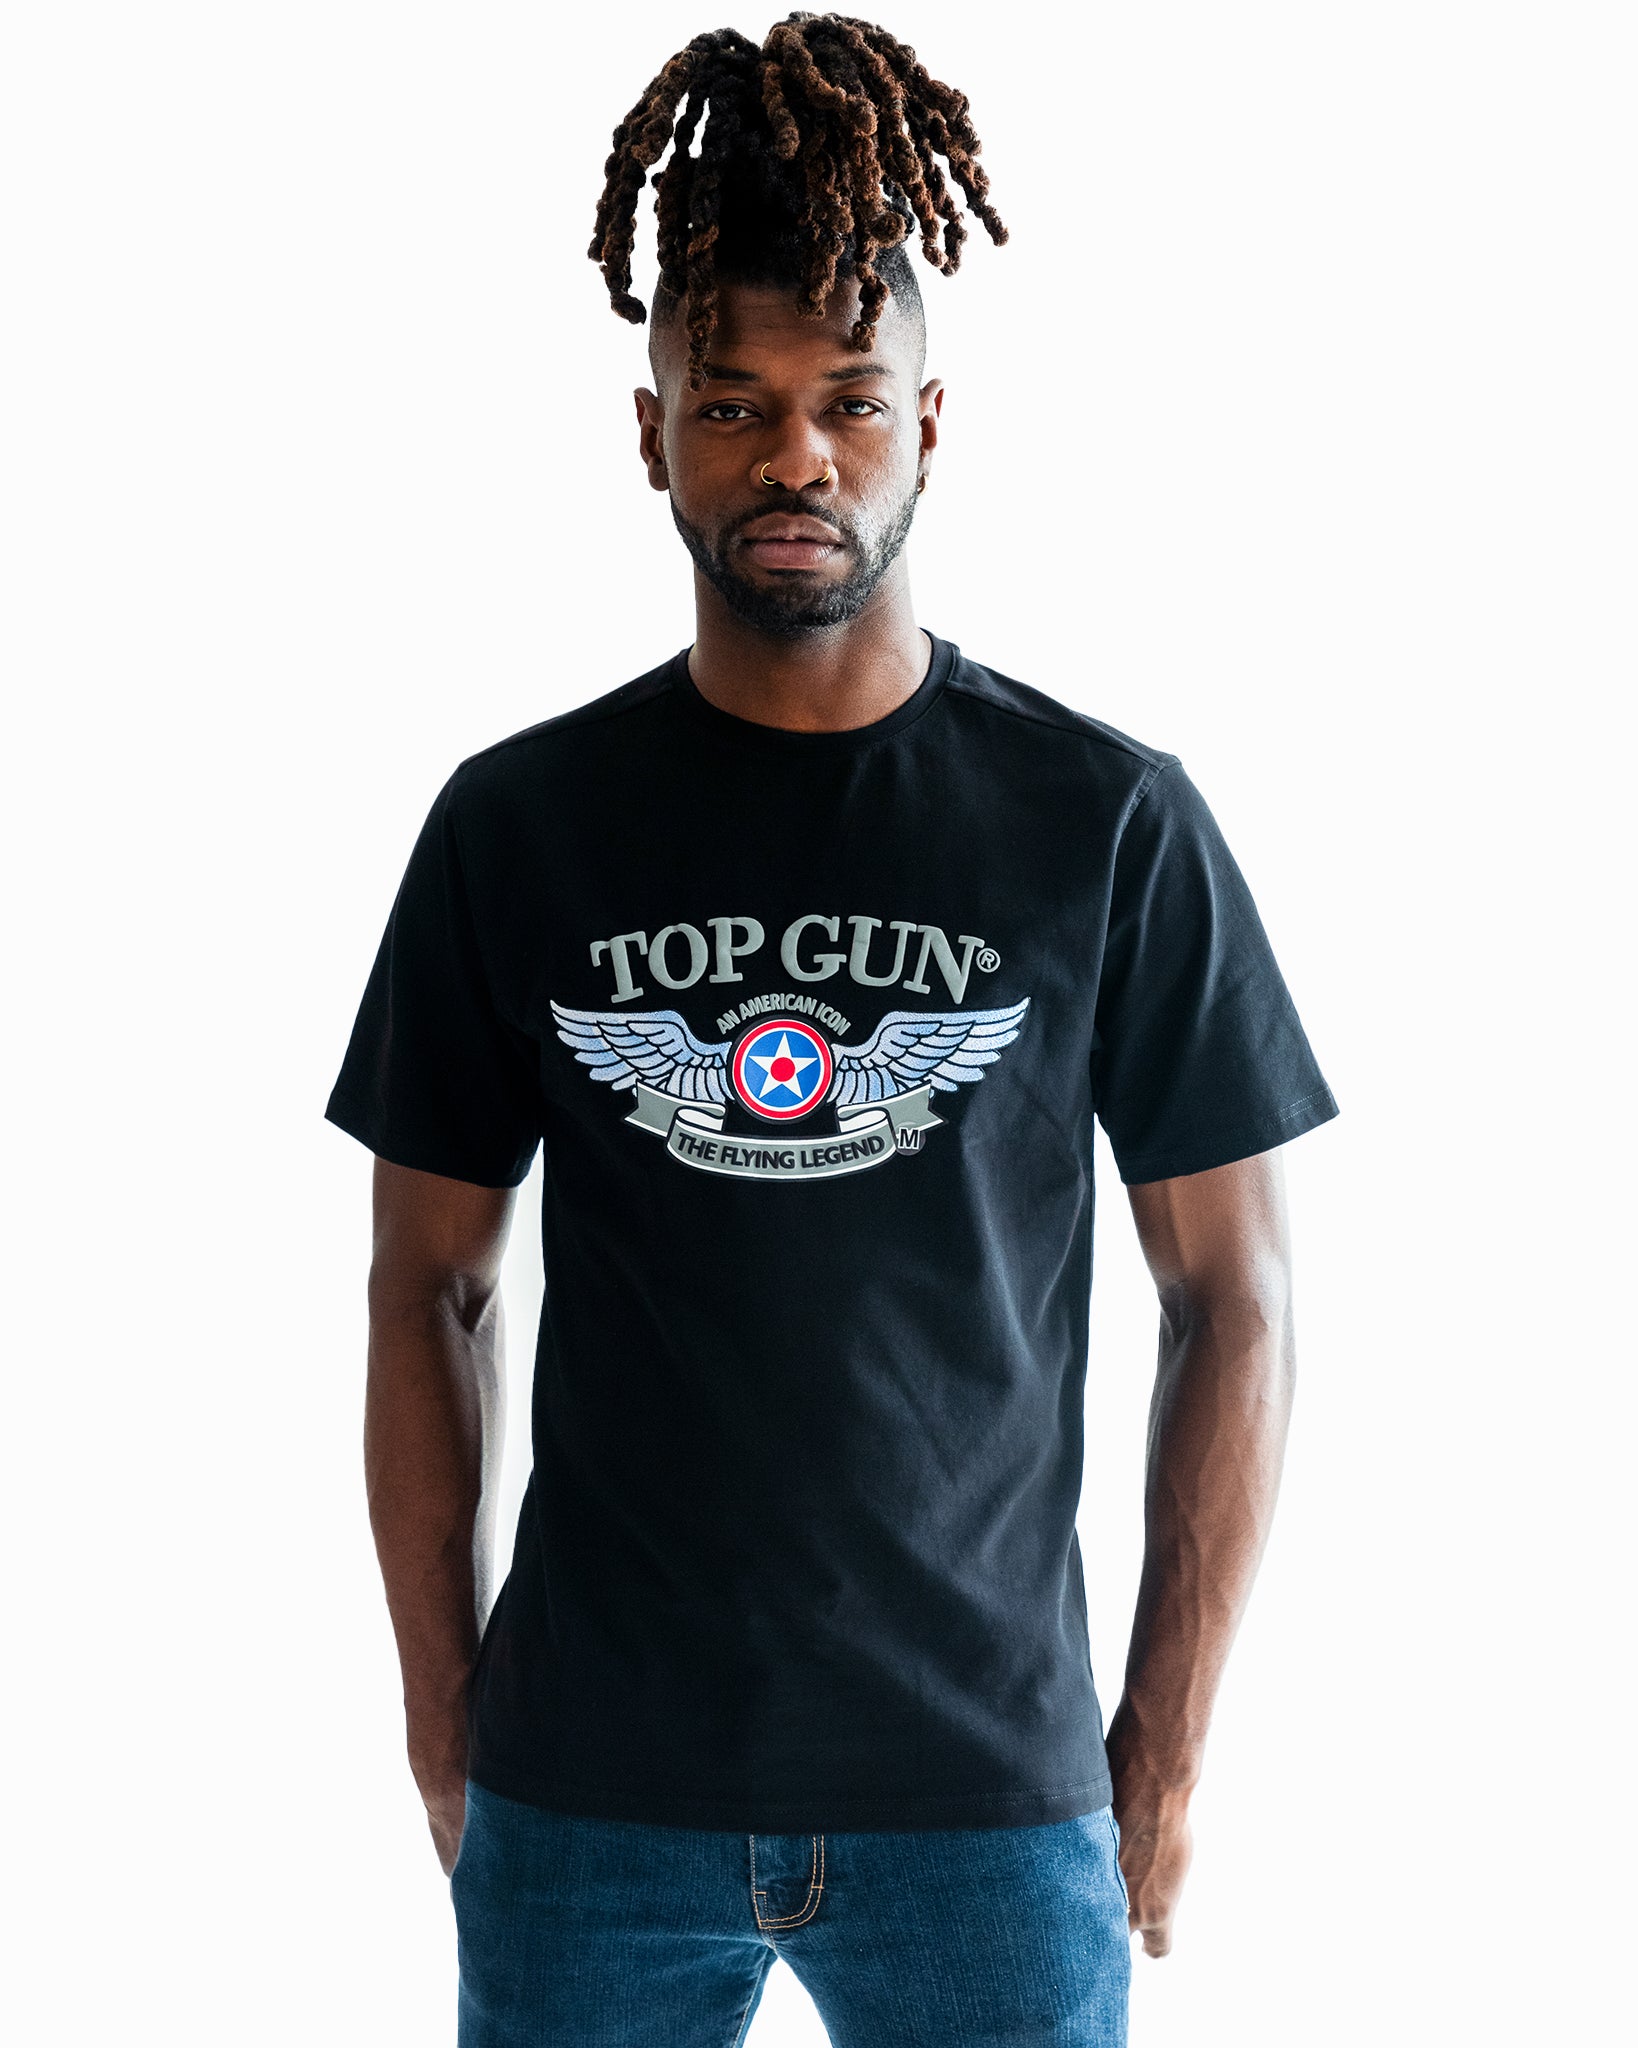 T-Shirts, Tees – TOP & top Cotton | Men\'s Store movie Men\'s | Tees, GUN Gun Best OFFICIAL Top gun STORE merchandise, Tees THE T-Shirts Summer